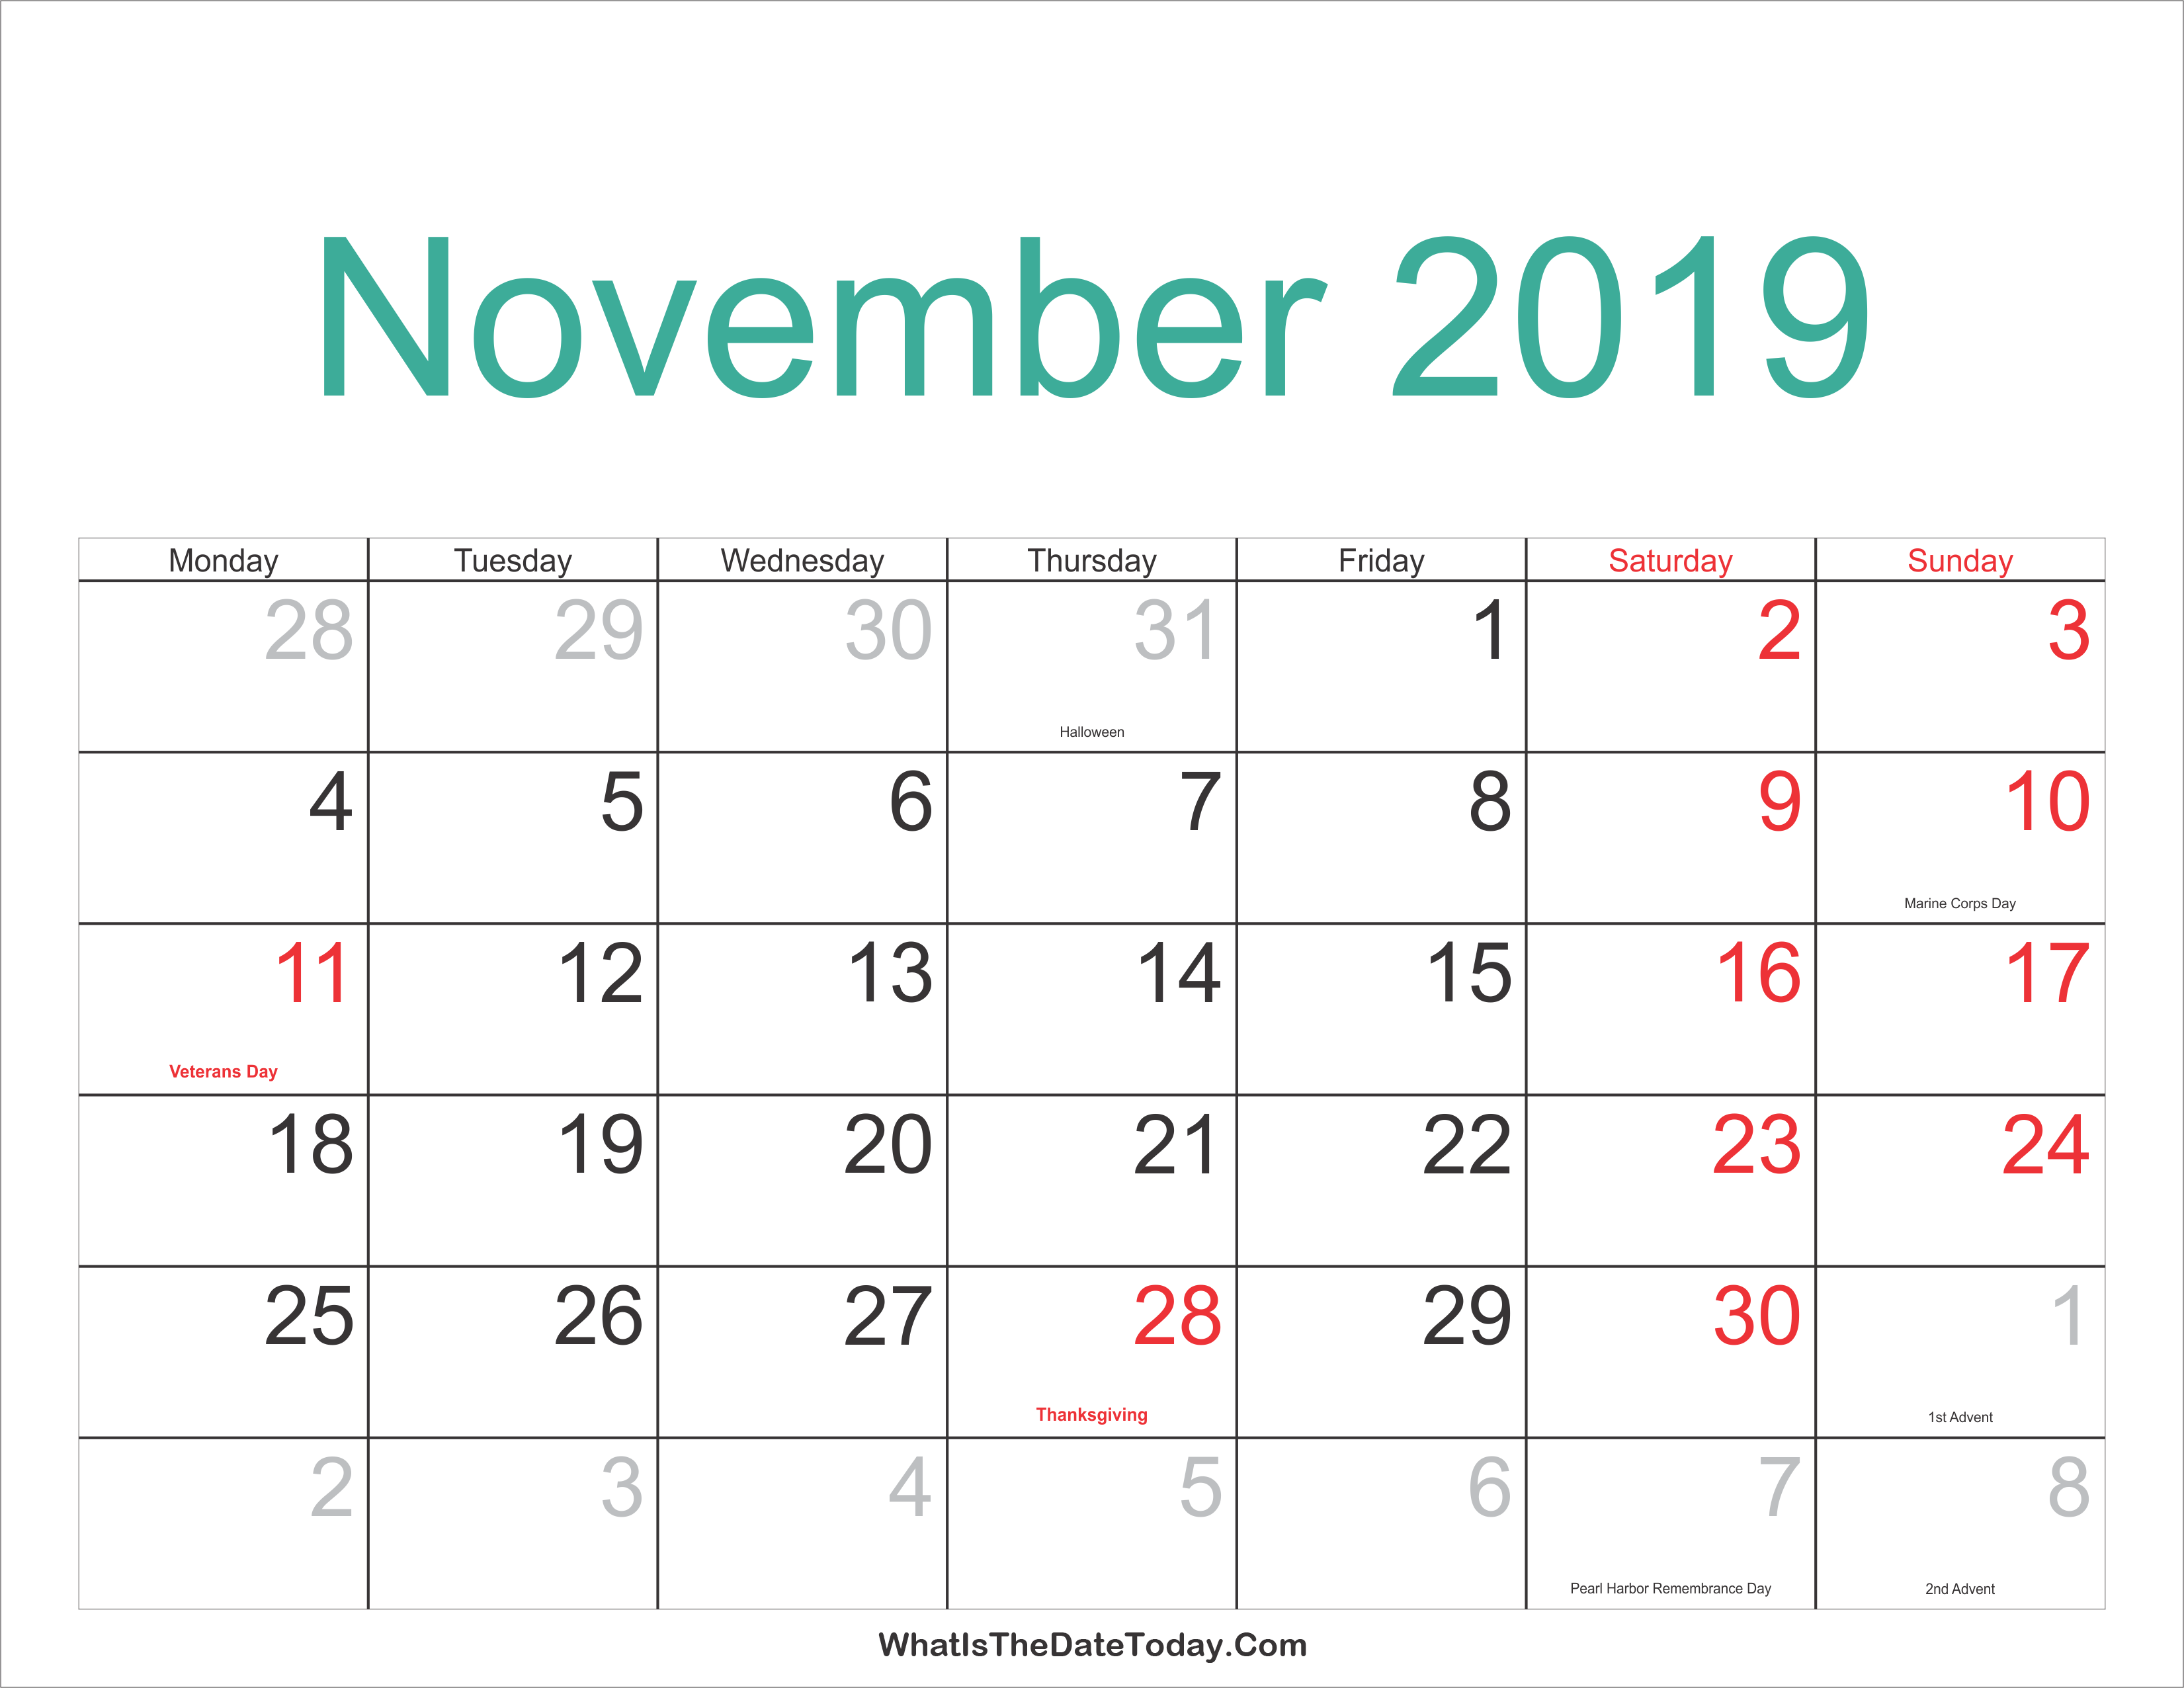 November 2019 Calendar Printable with Holidays Whatisthedatetoday Com